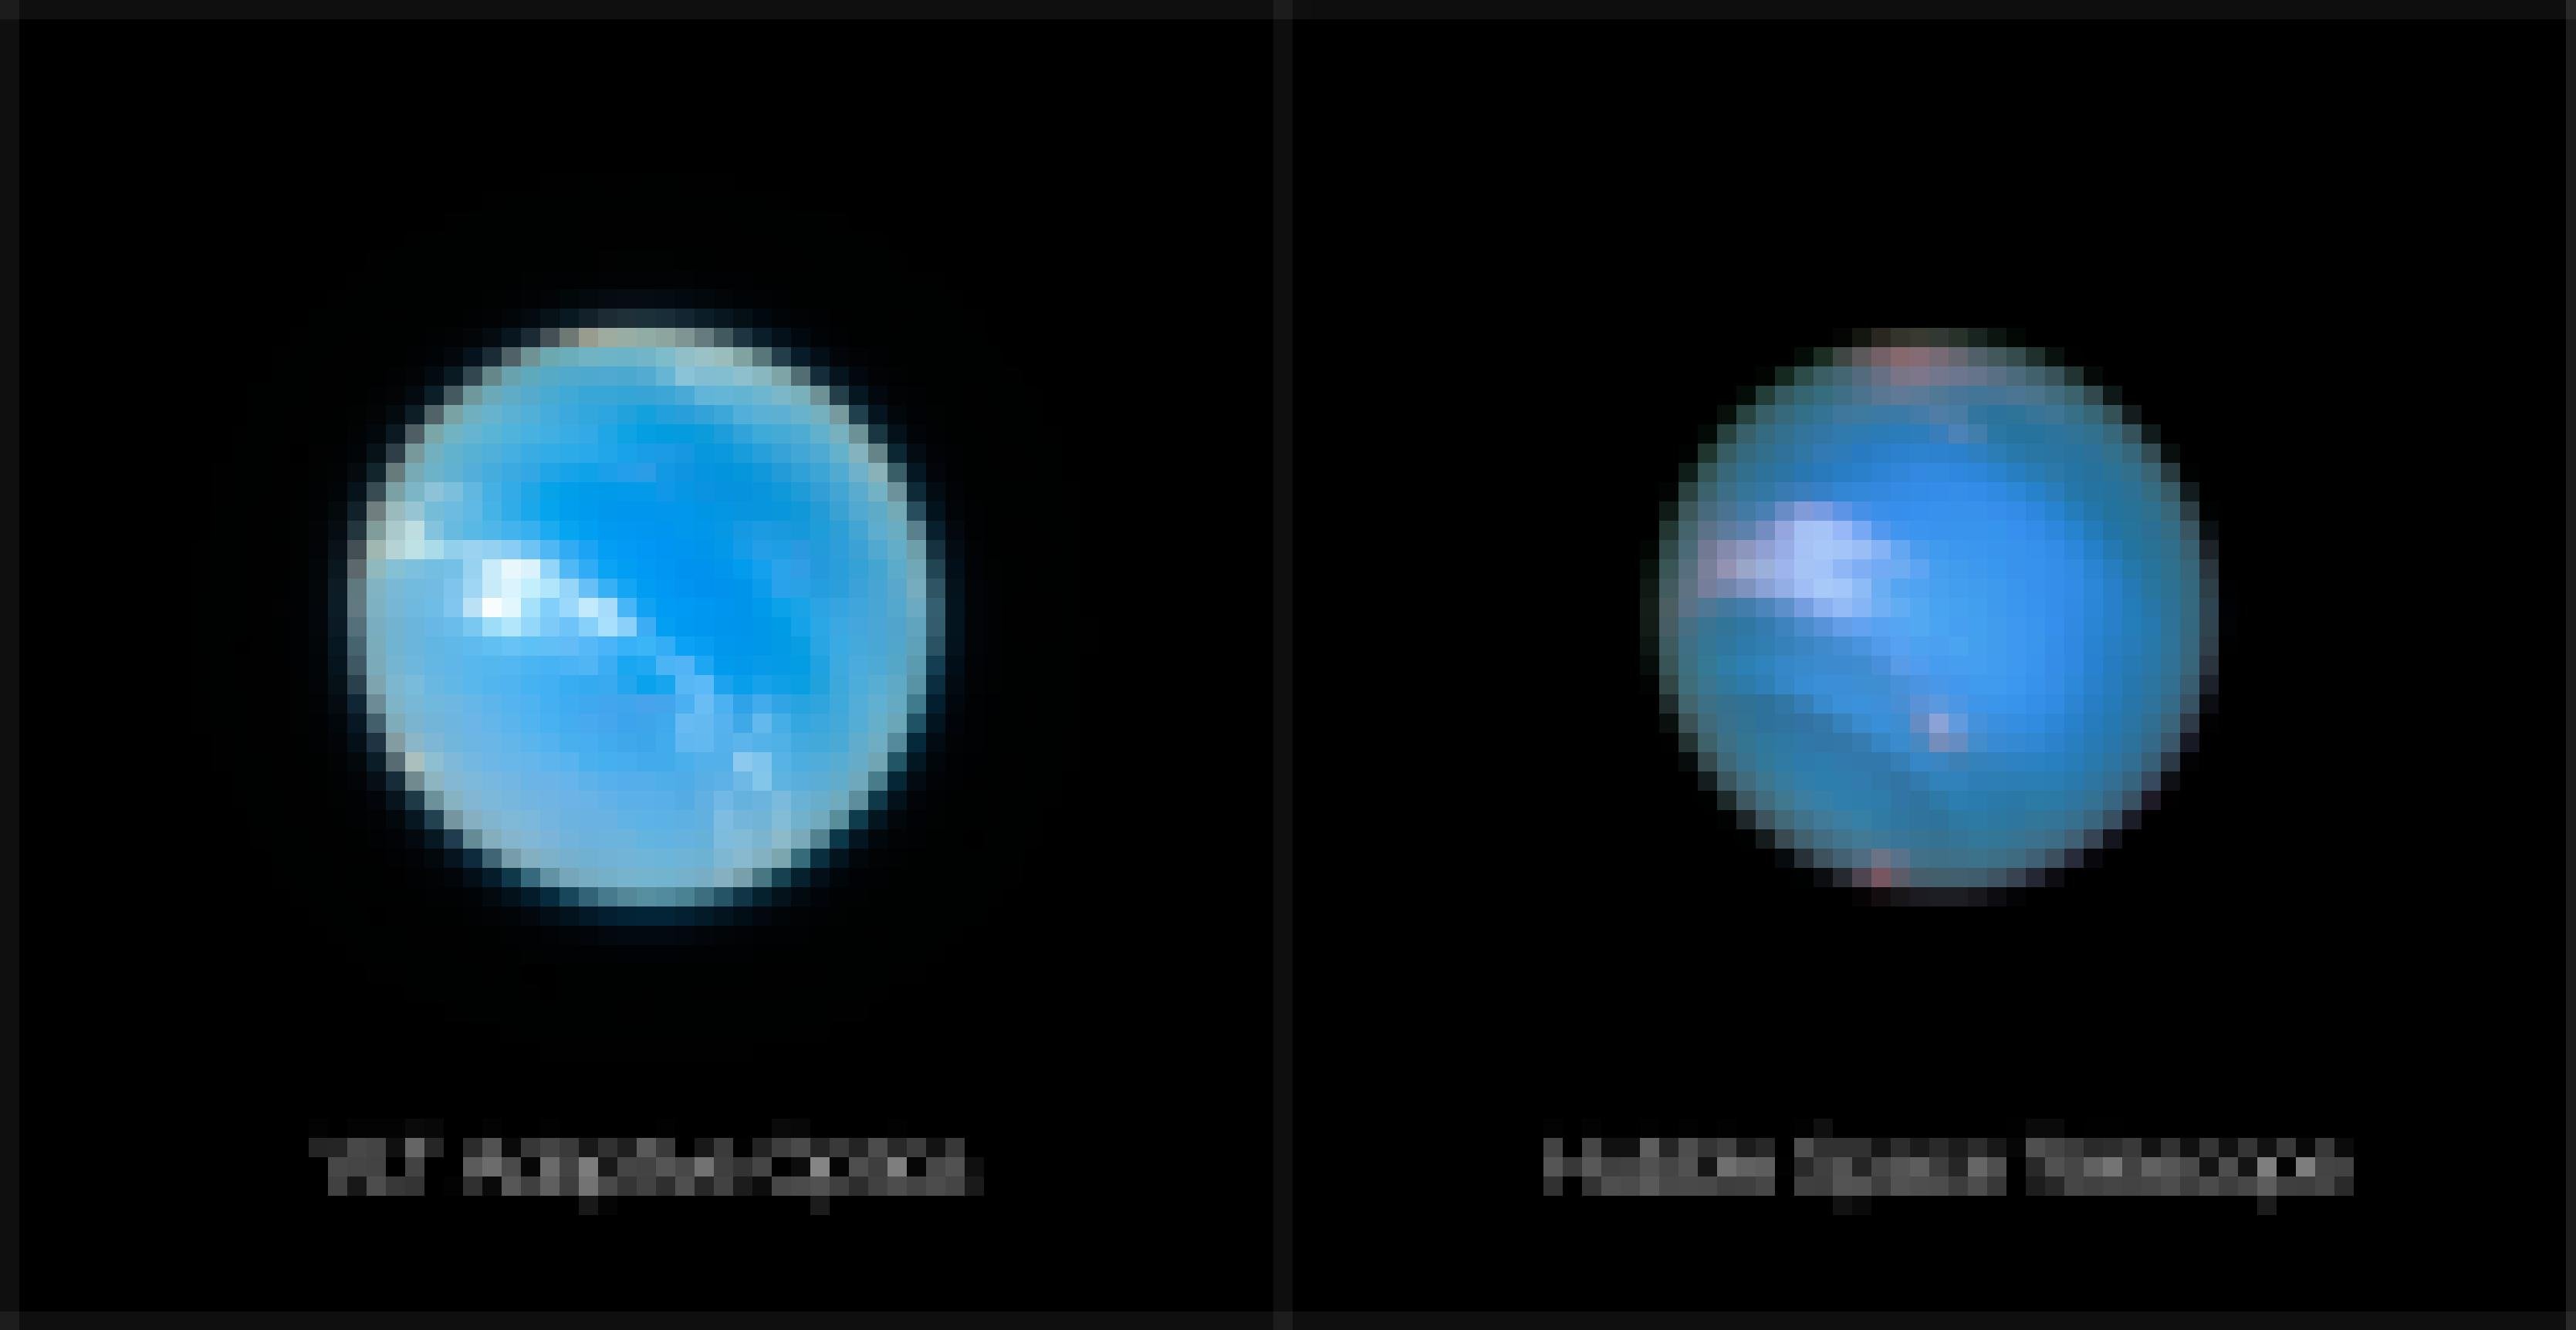 Links Neptun mit dem Very Large Telescope, adaptiver Optik und im MUSE-Nahfeldmodus, rechts die beste, aber viel unschärfere Aufnahme des Hubble-Weltraumteleskops